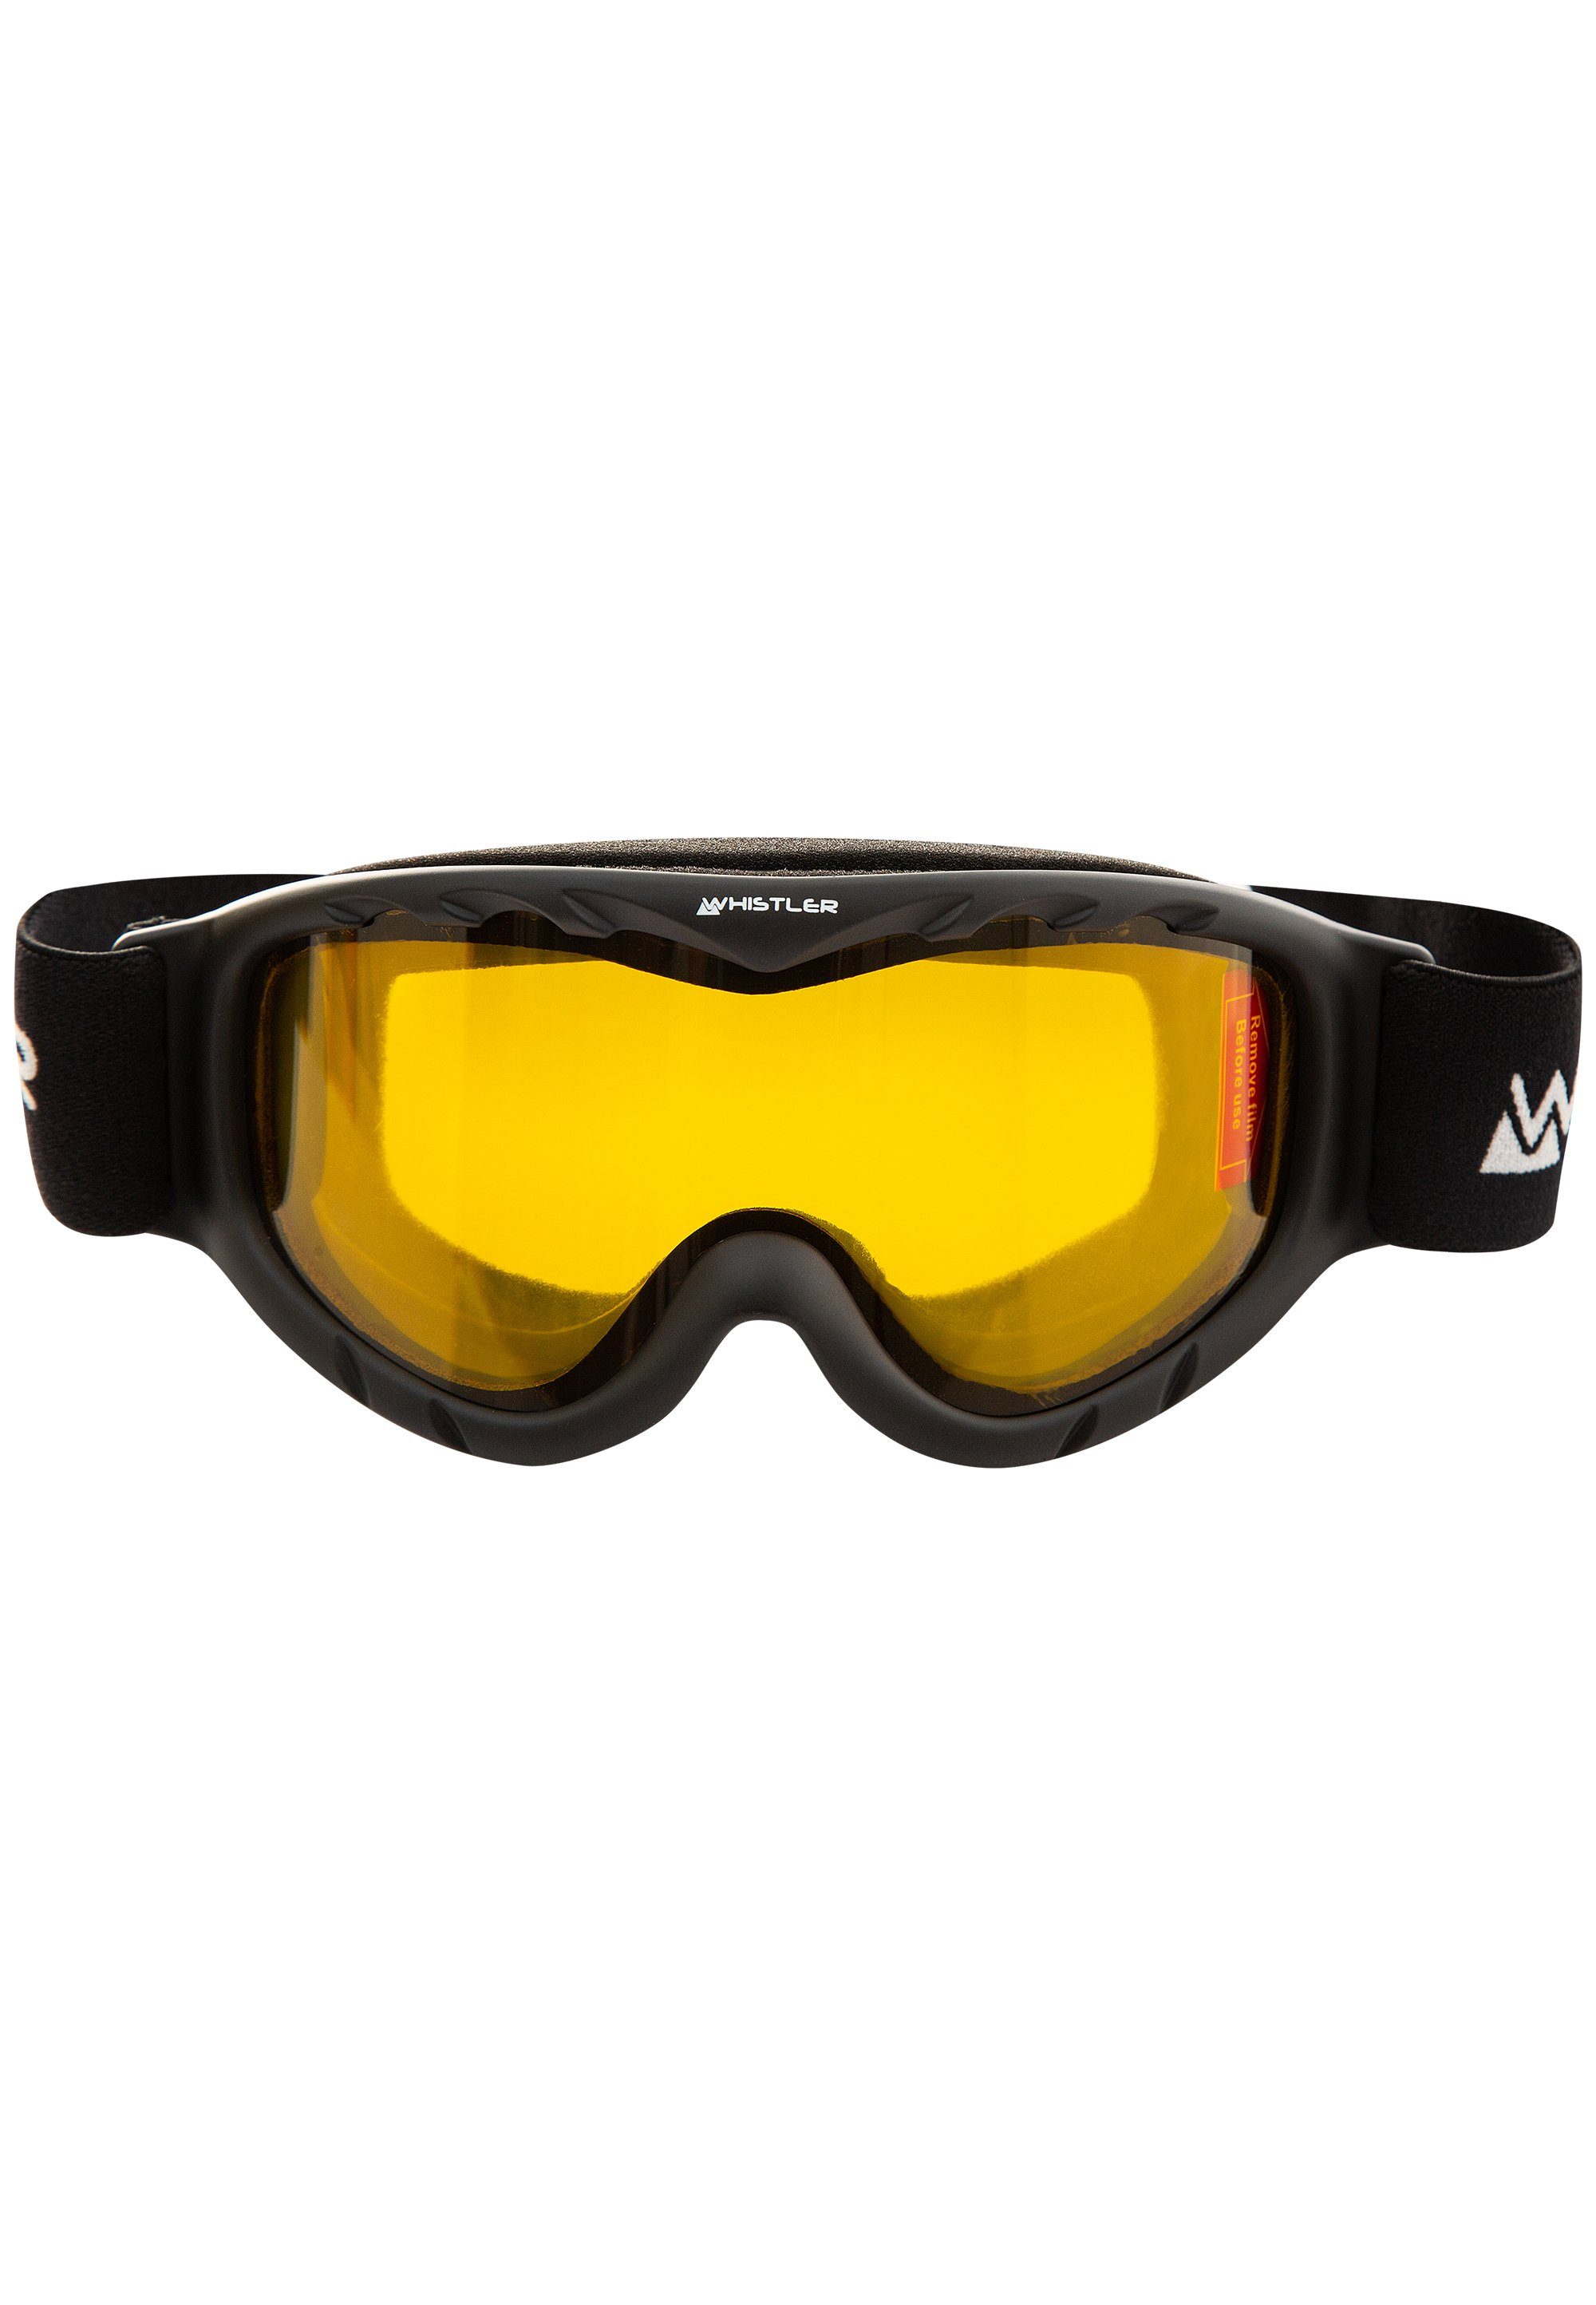 Goggle, WS300 mit WHISTLER Ski Jr. Skibrille Anti-Fog-Beschichtung